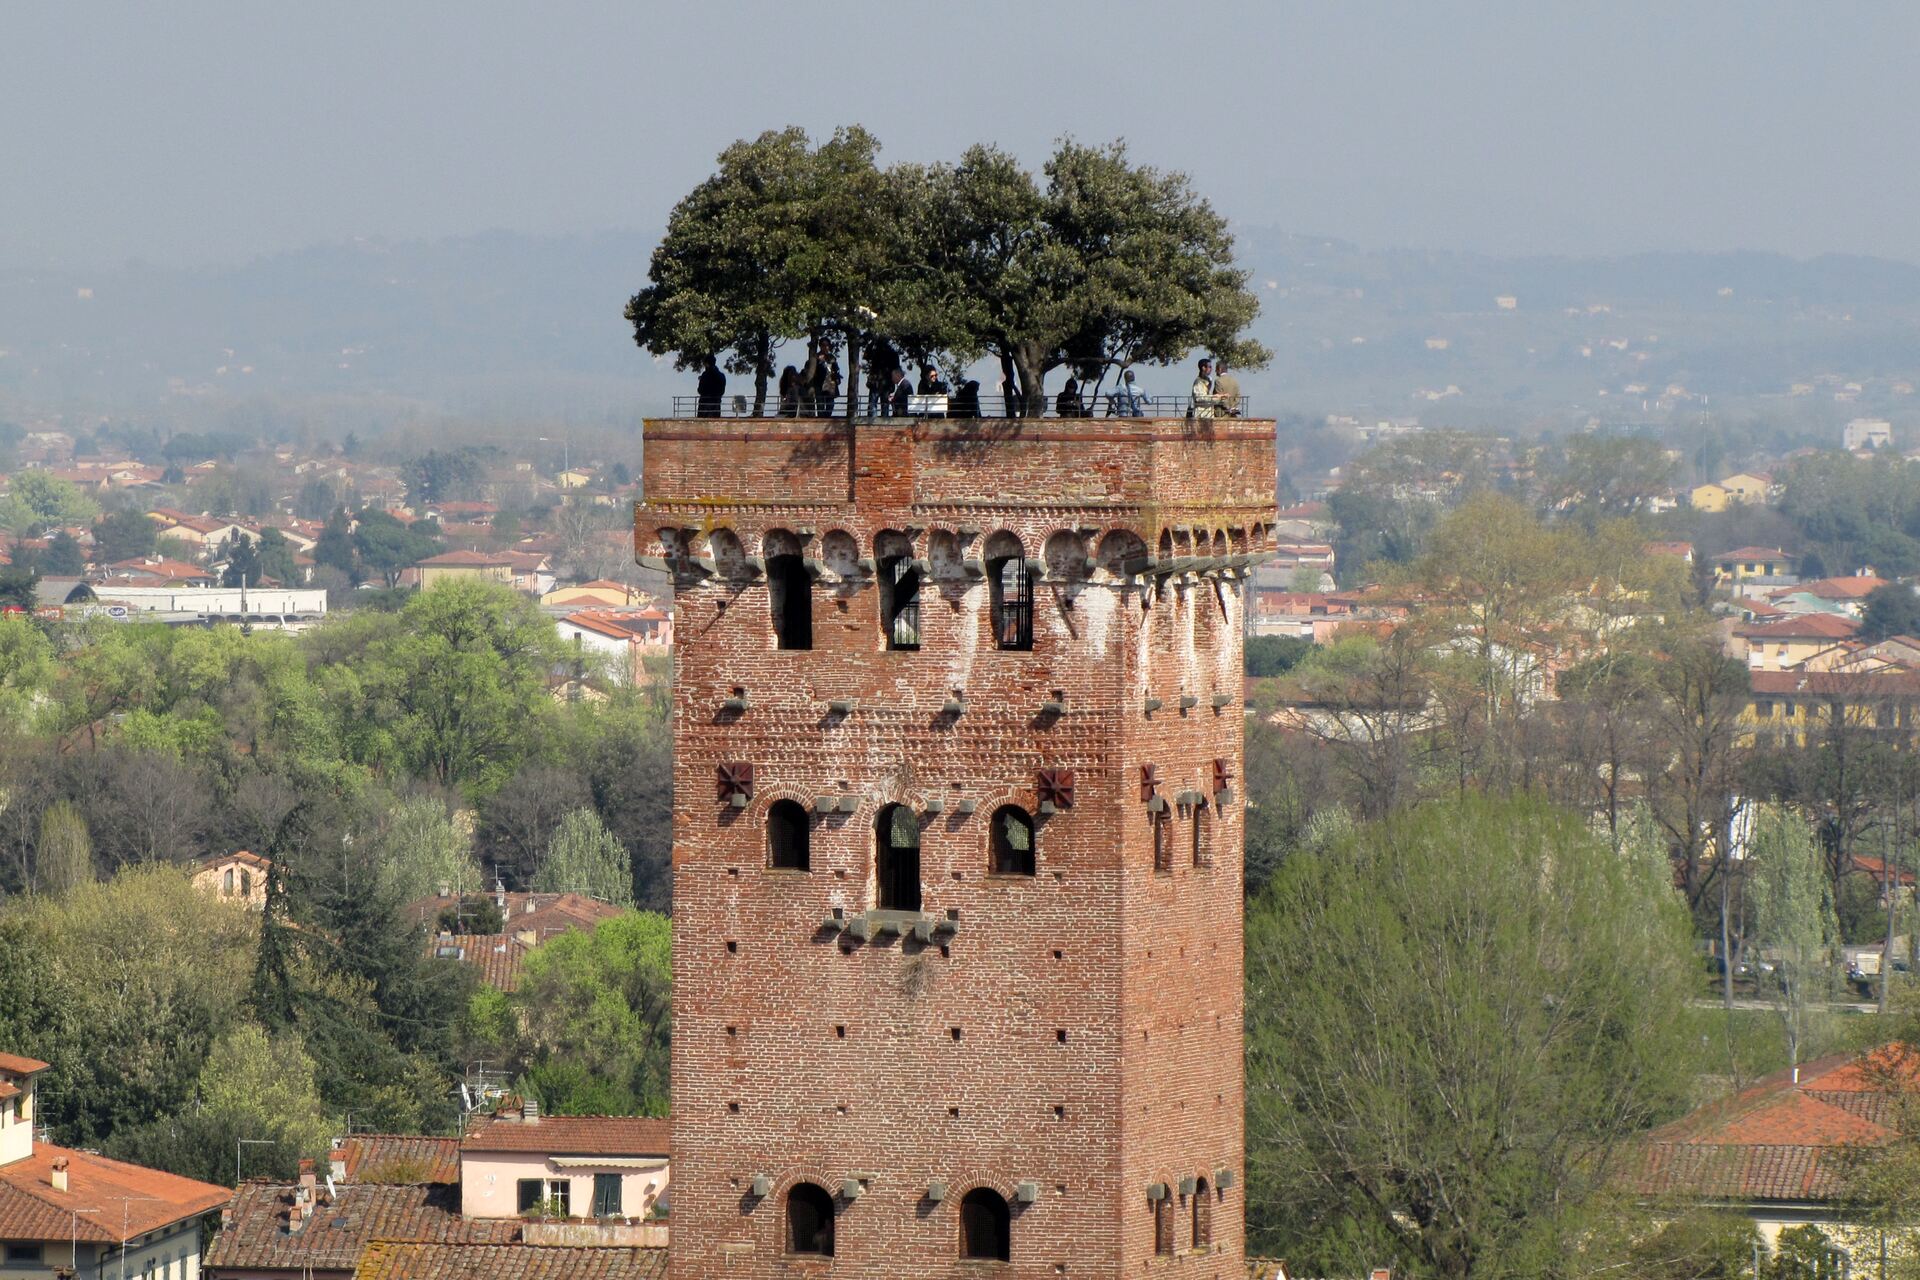 Bosco Verticale: La torre Guinigi di Lucca, con i suoi alberi di leccio sulla sommità, fu un vero e proprio precursore